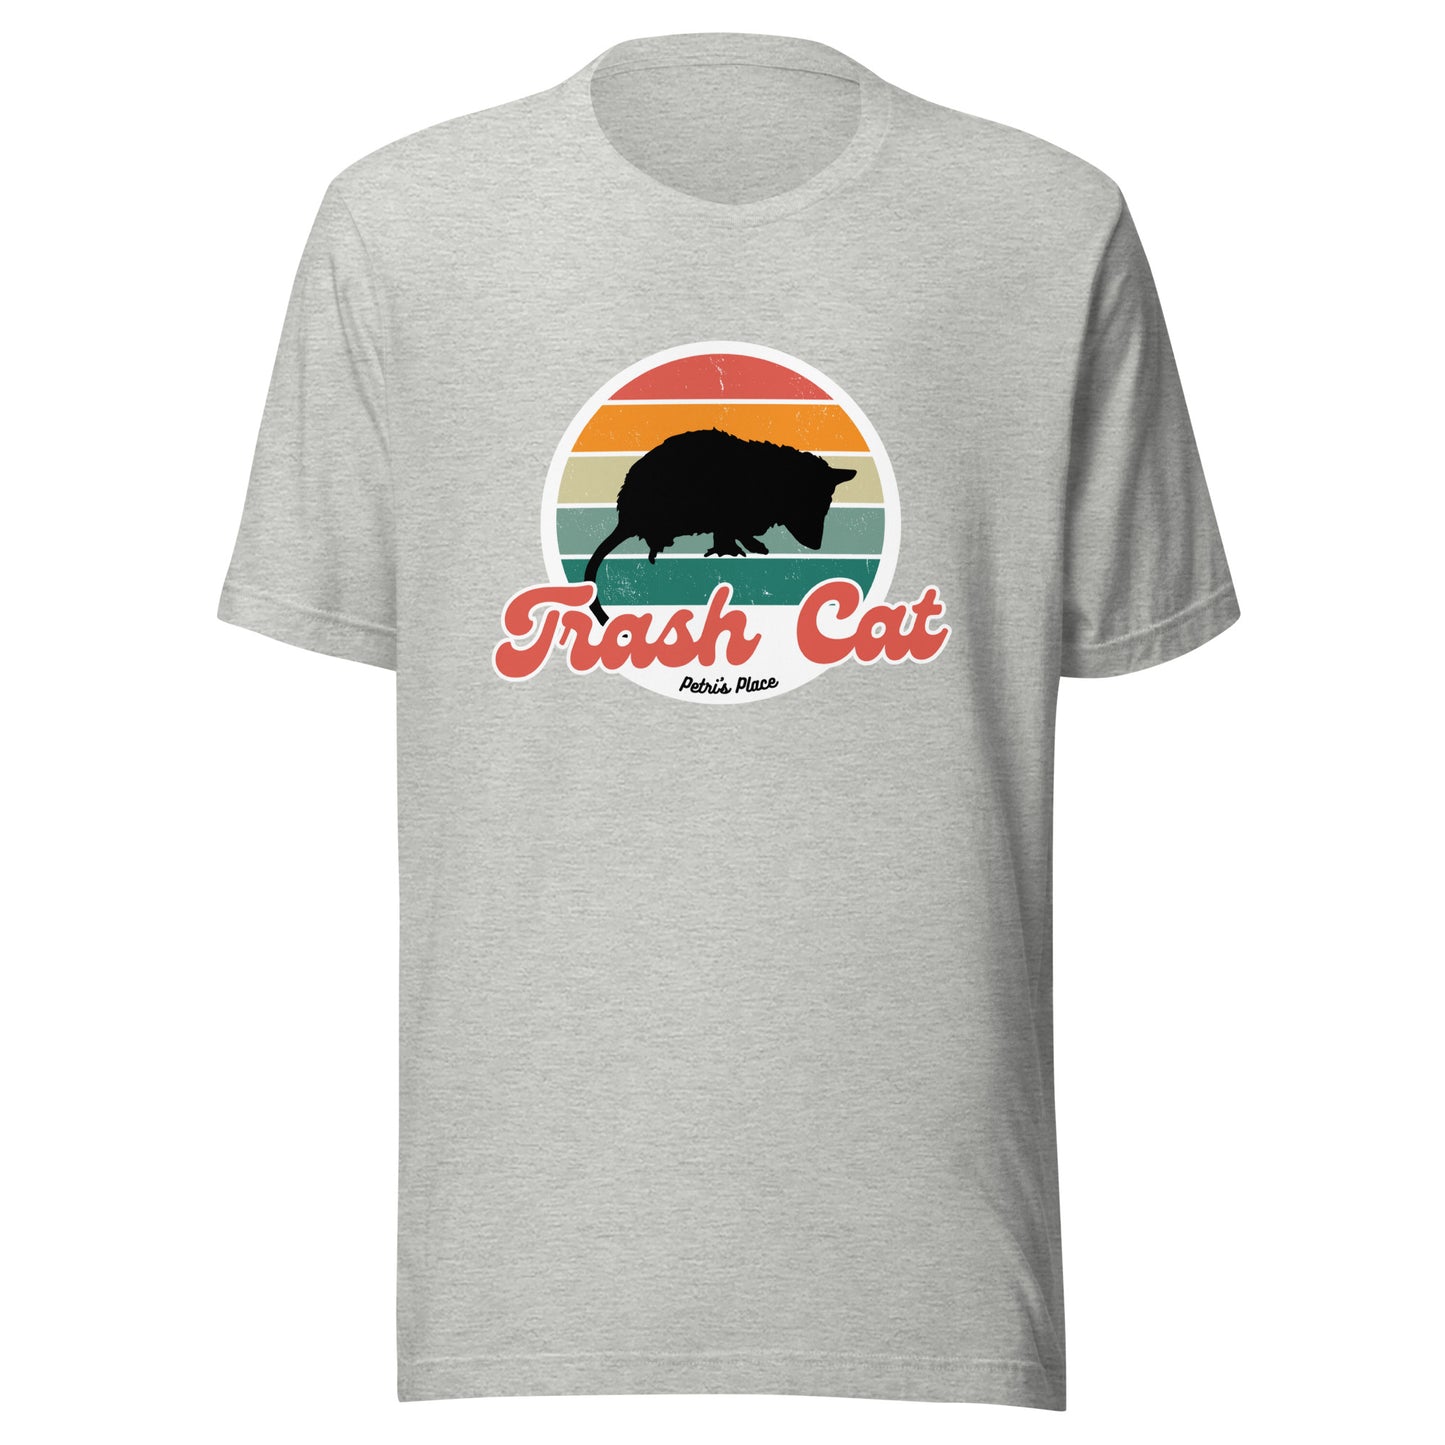 Retro Look Trash Cat - Opossum T-Shirt (4 Colors)